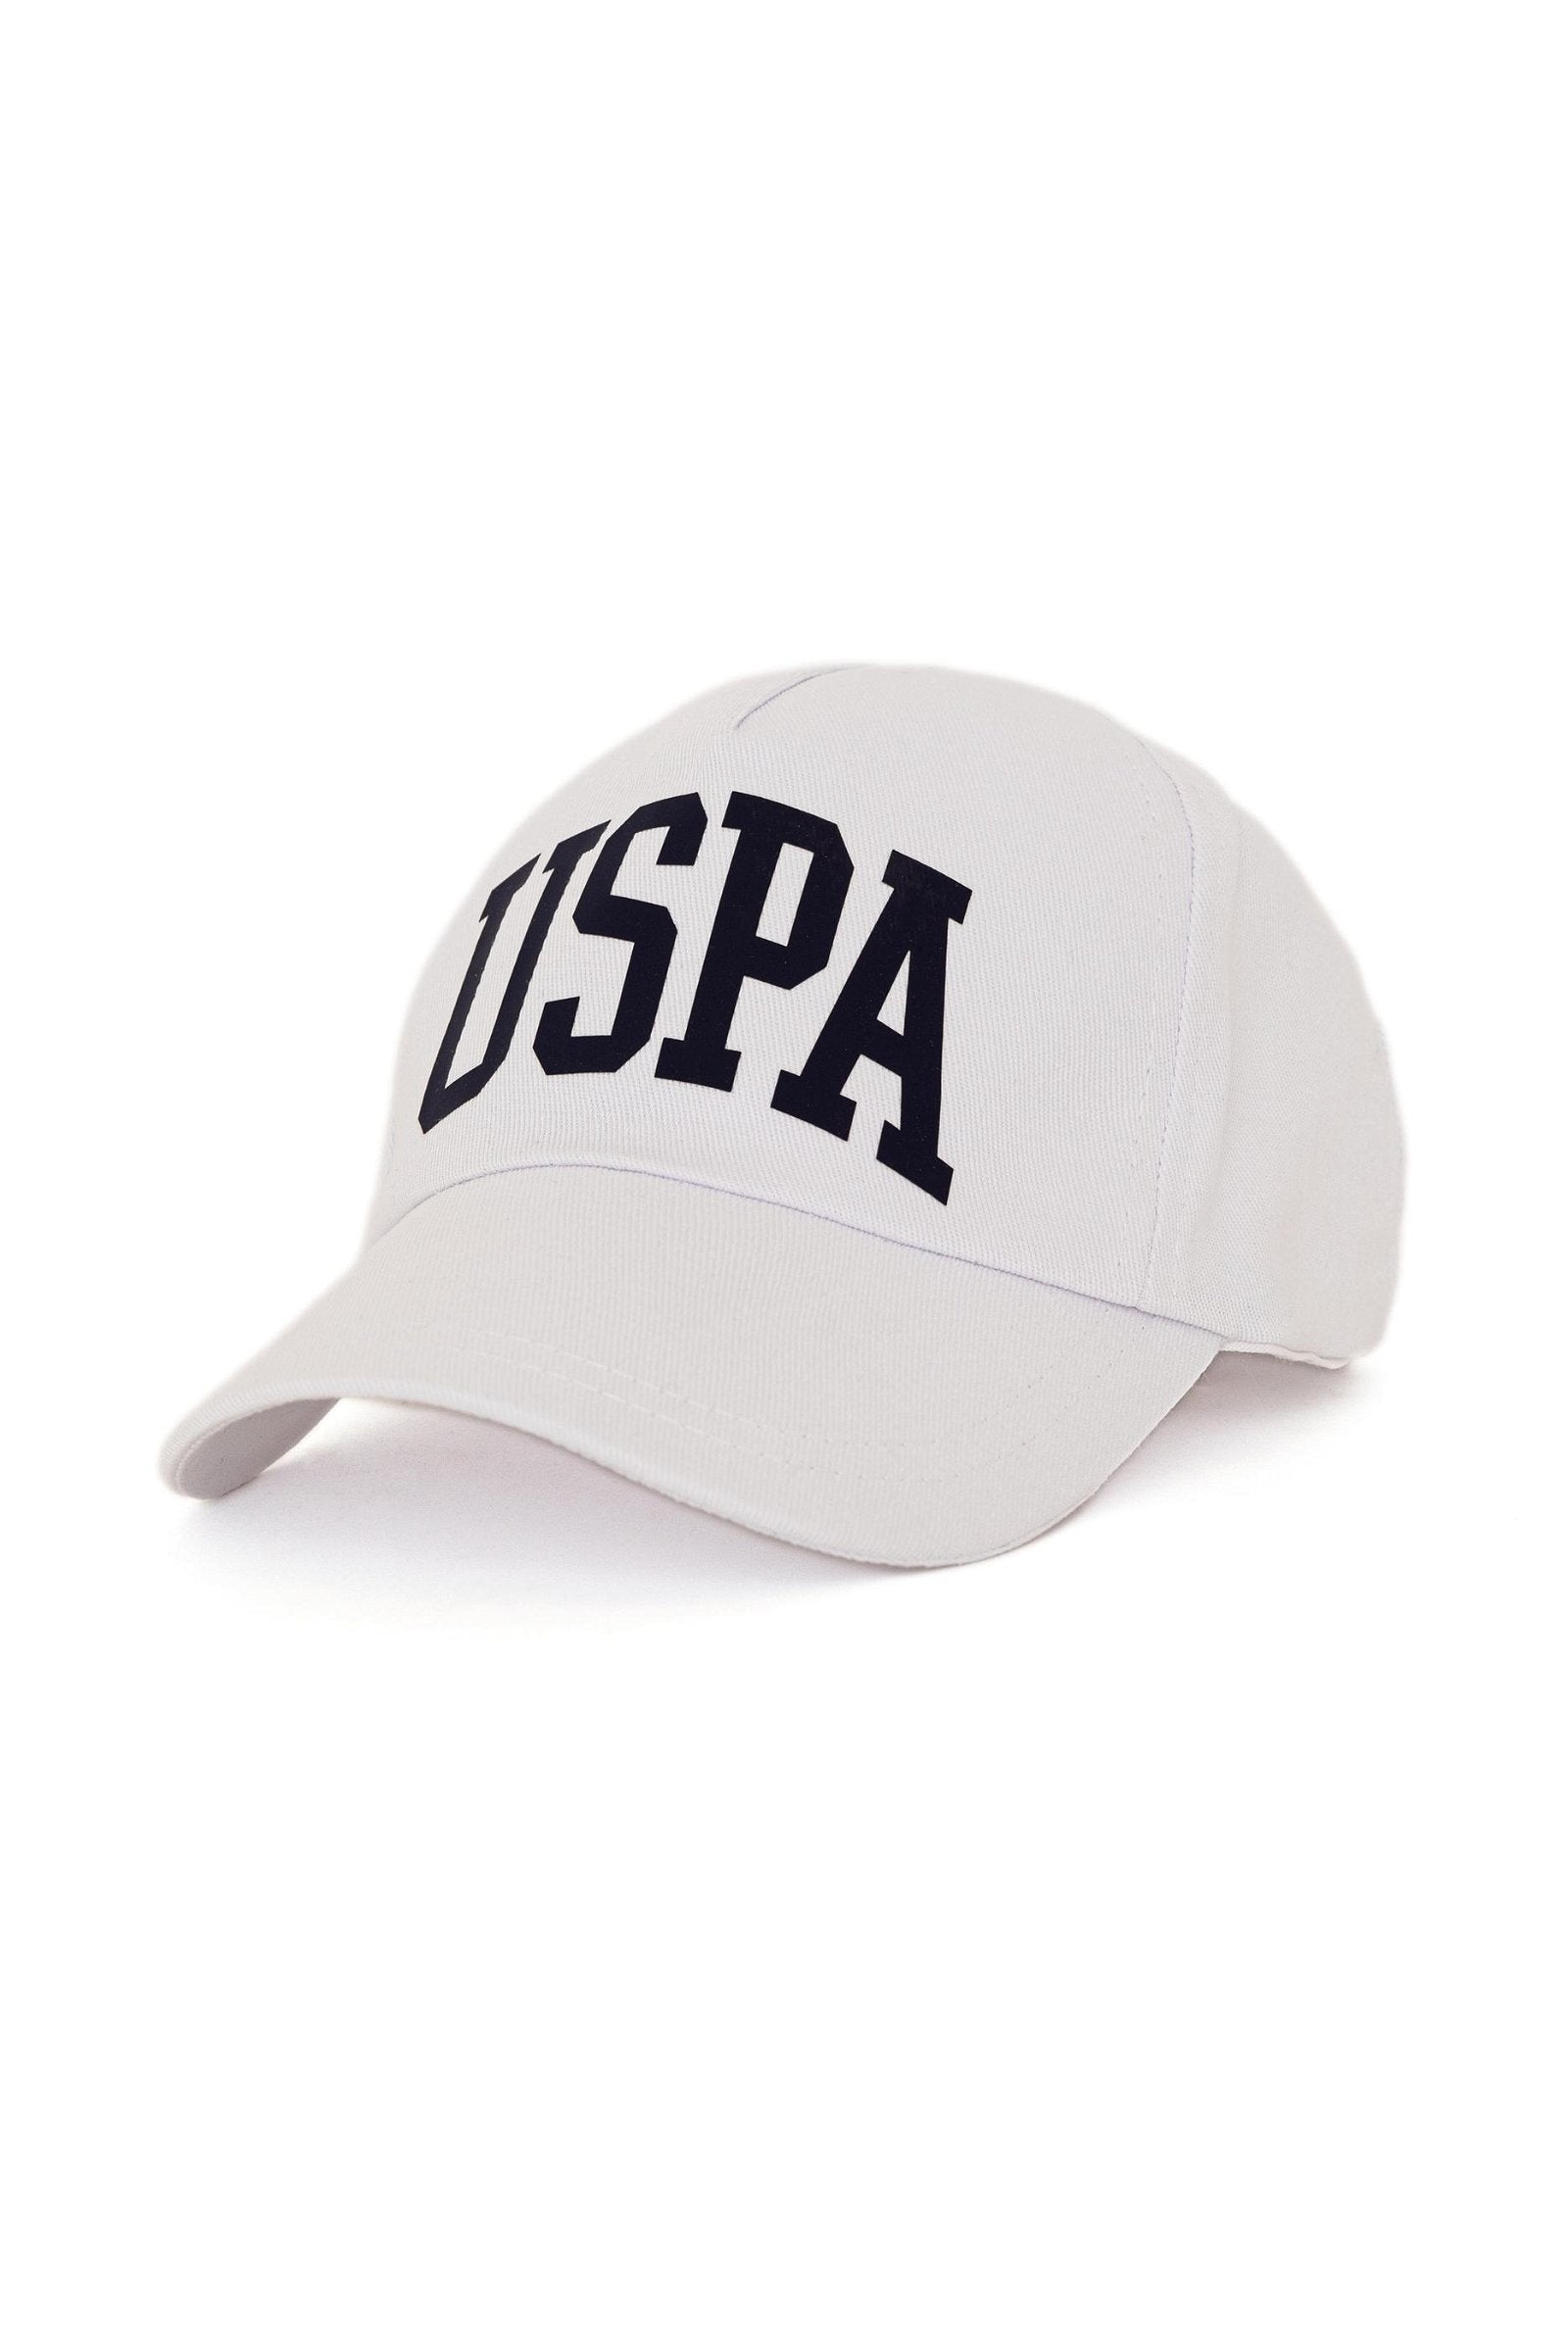 US Polo Assn. USPA Hat - Men